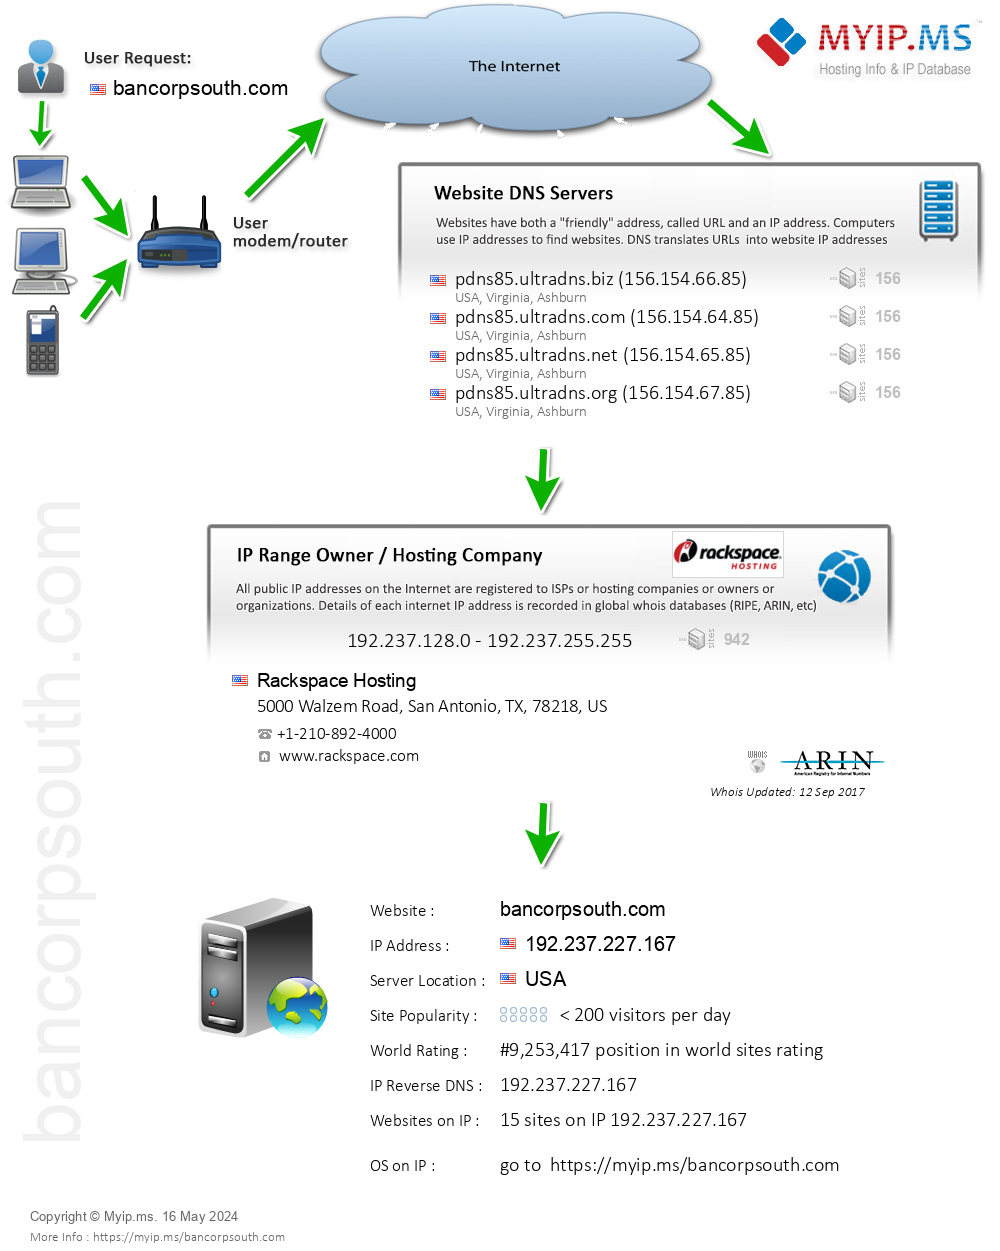 Bancorpsouth.com - Website Hosting Visual IP Diagram